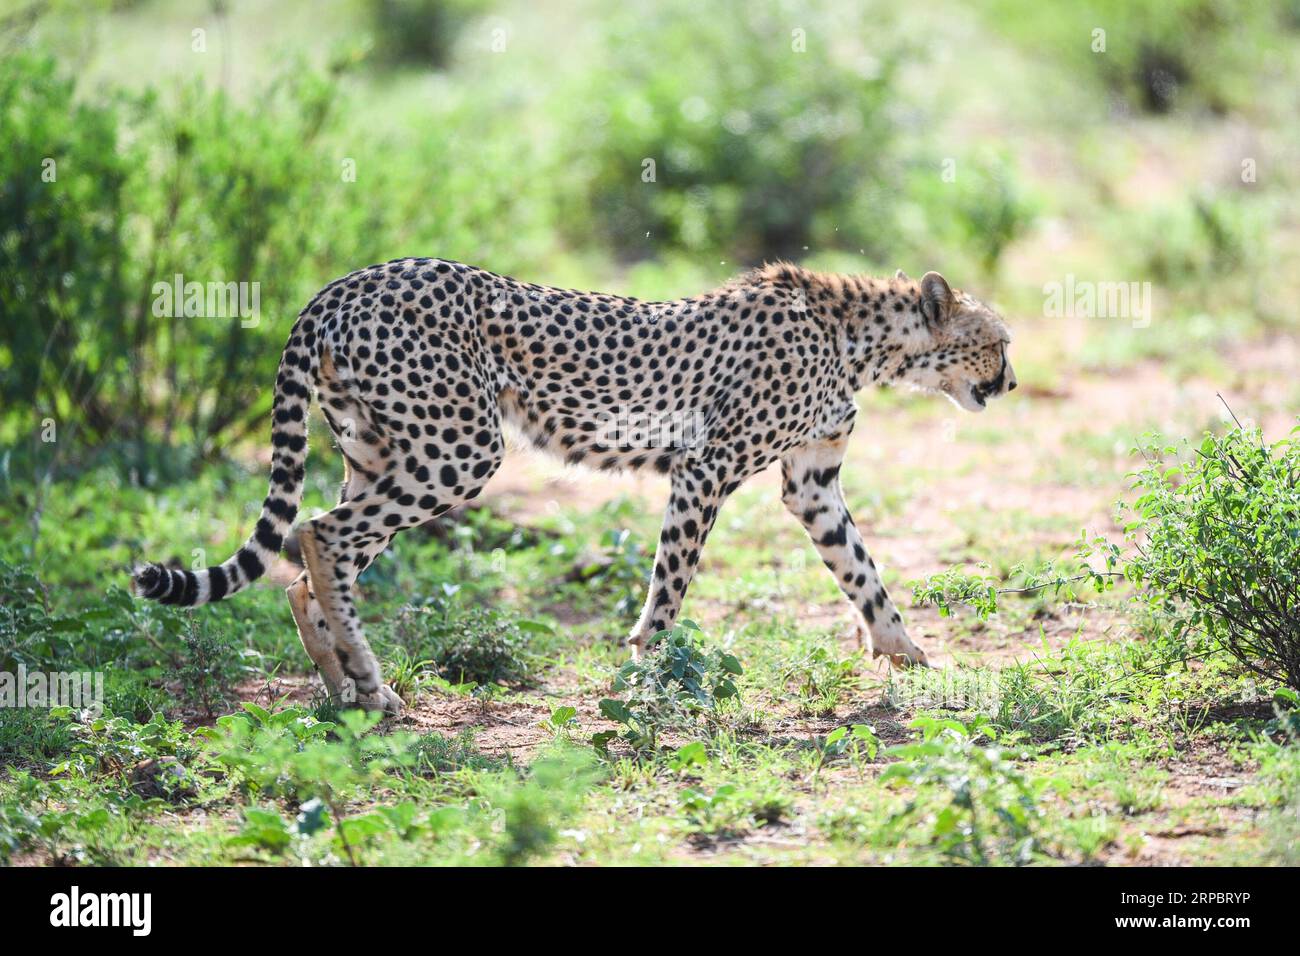 (190615) -- NAIROBI, 15. Juni 2019 (Xinhua) -- Ein Gepard sucht Essen im Samburu National Reserve, nördlich von Kenia, 14. Juni 2019. Das Samburu National Reserve liegt im Norden Kenias und erstreckt sich über eine Fläche von etwa 165 Quadratkilometern. Es zieht Tiere an, weil der Ewaso ng iro Fluss durch ihn fließt und die Mischung aus Akazien, Flusswald, Dornbäumen und Grünlandvegetation. Grevy s Zebra, Gerenuk, Netzgiraffen und Beisa oryx sind hier mehr als in anderen Regionen des Landes. Das Reservat beherbergt auch Löwen, Krokodile, Paviane, Elefanten und hundert Stockfoto